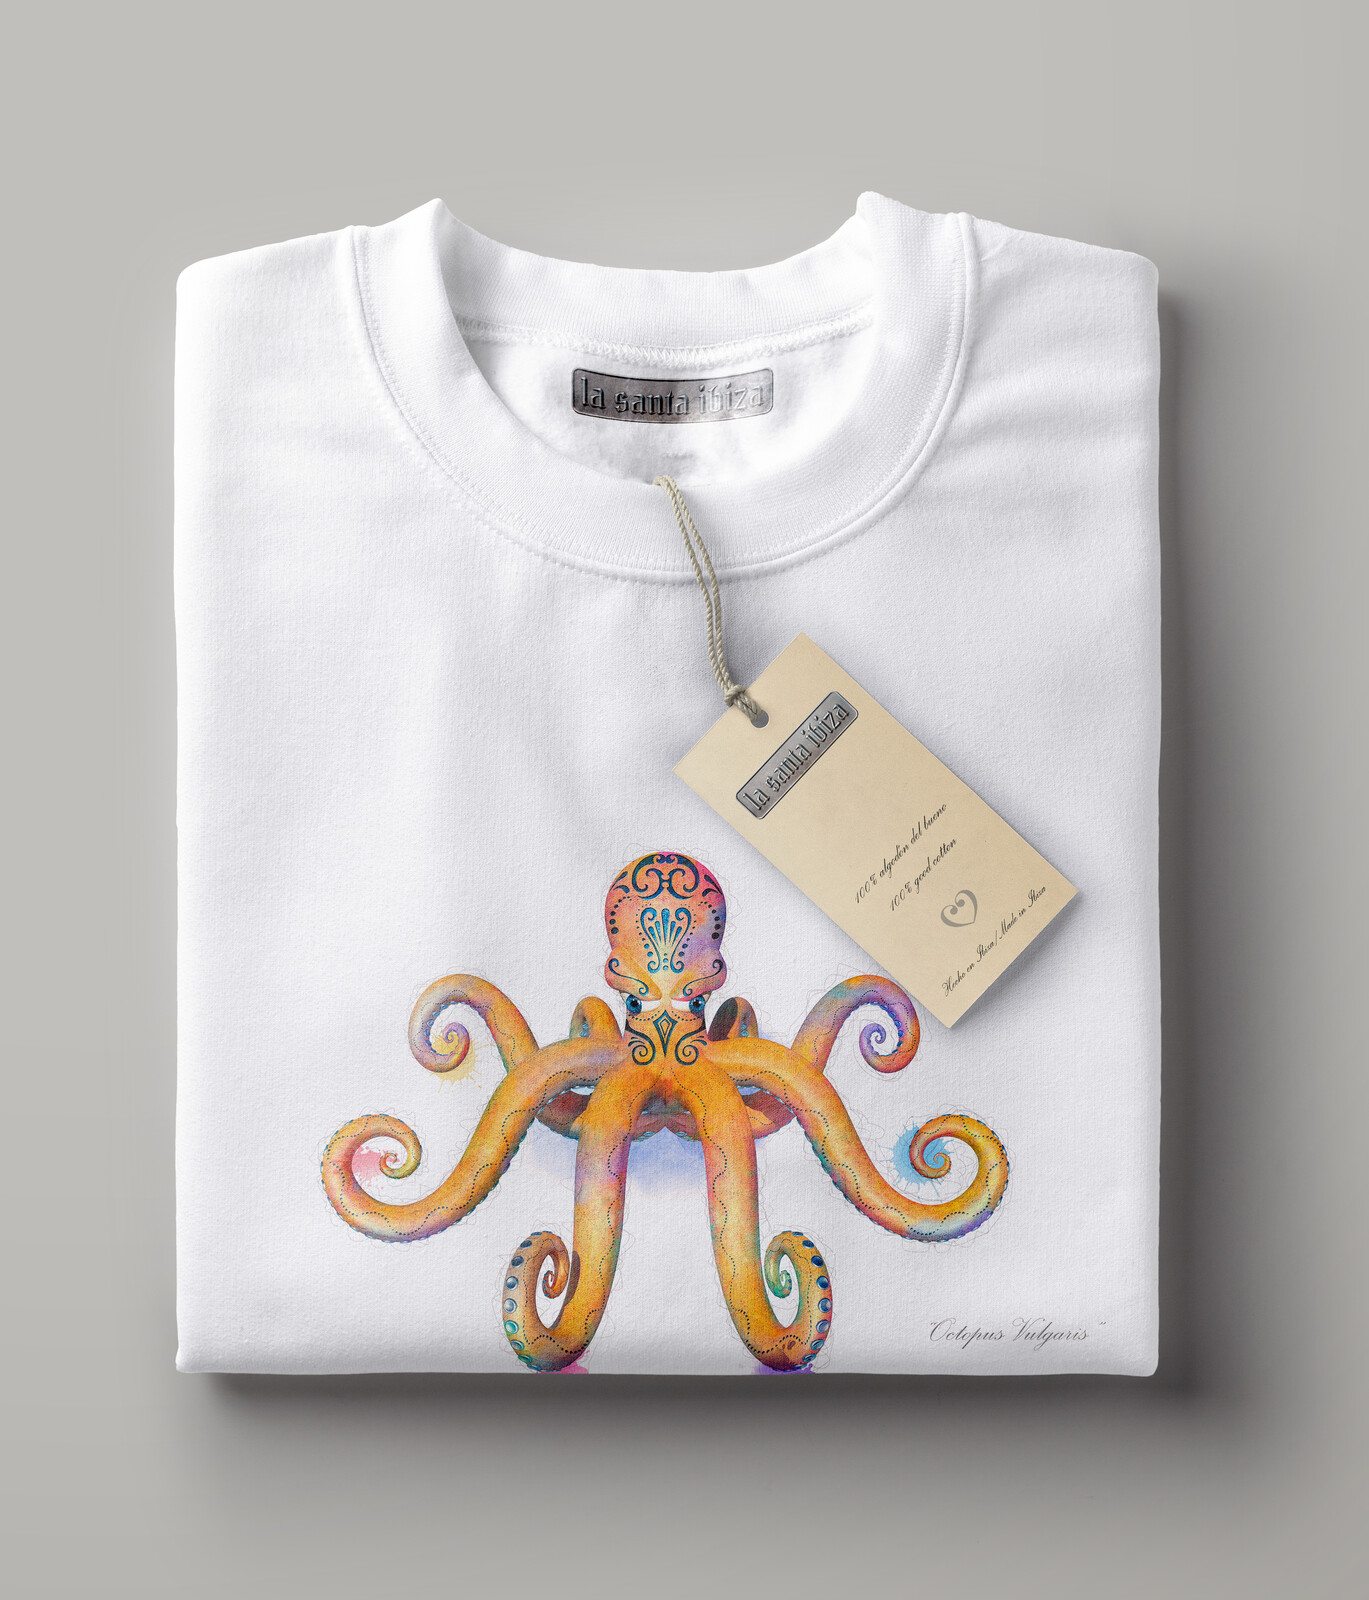 Camiseta "Octopus vulgaris"